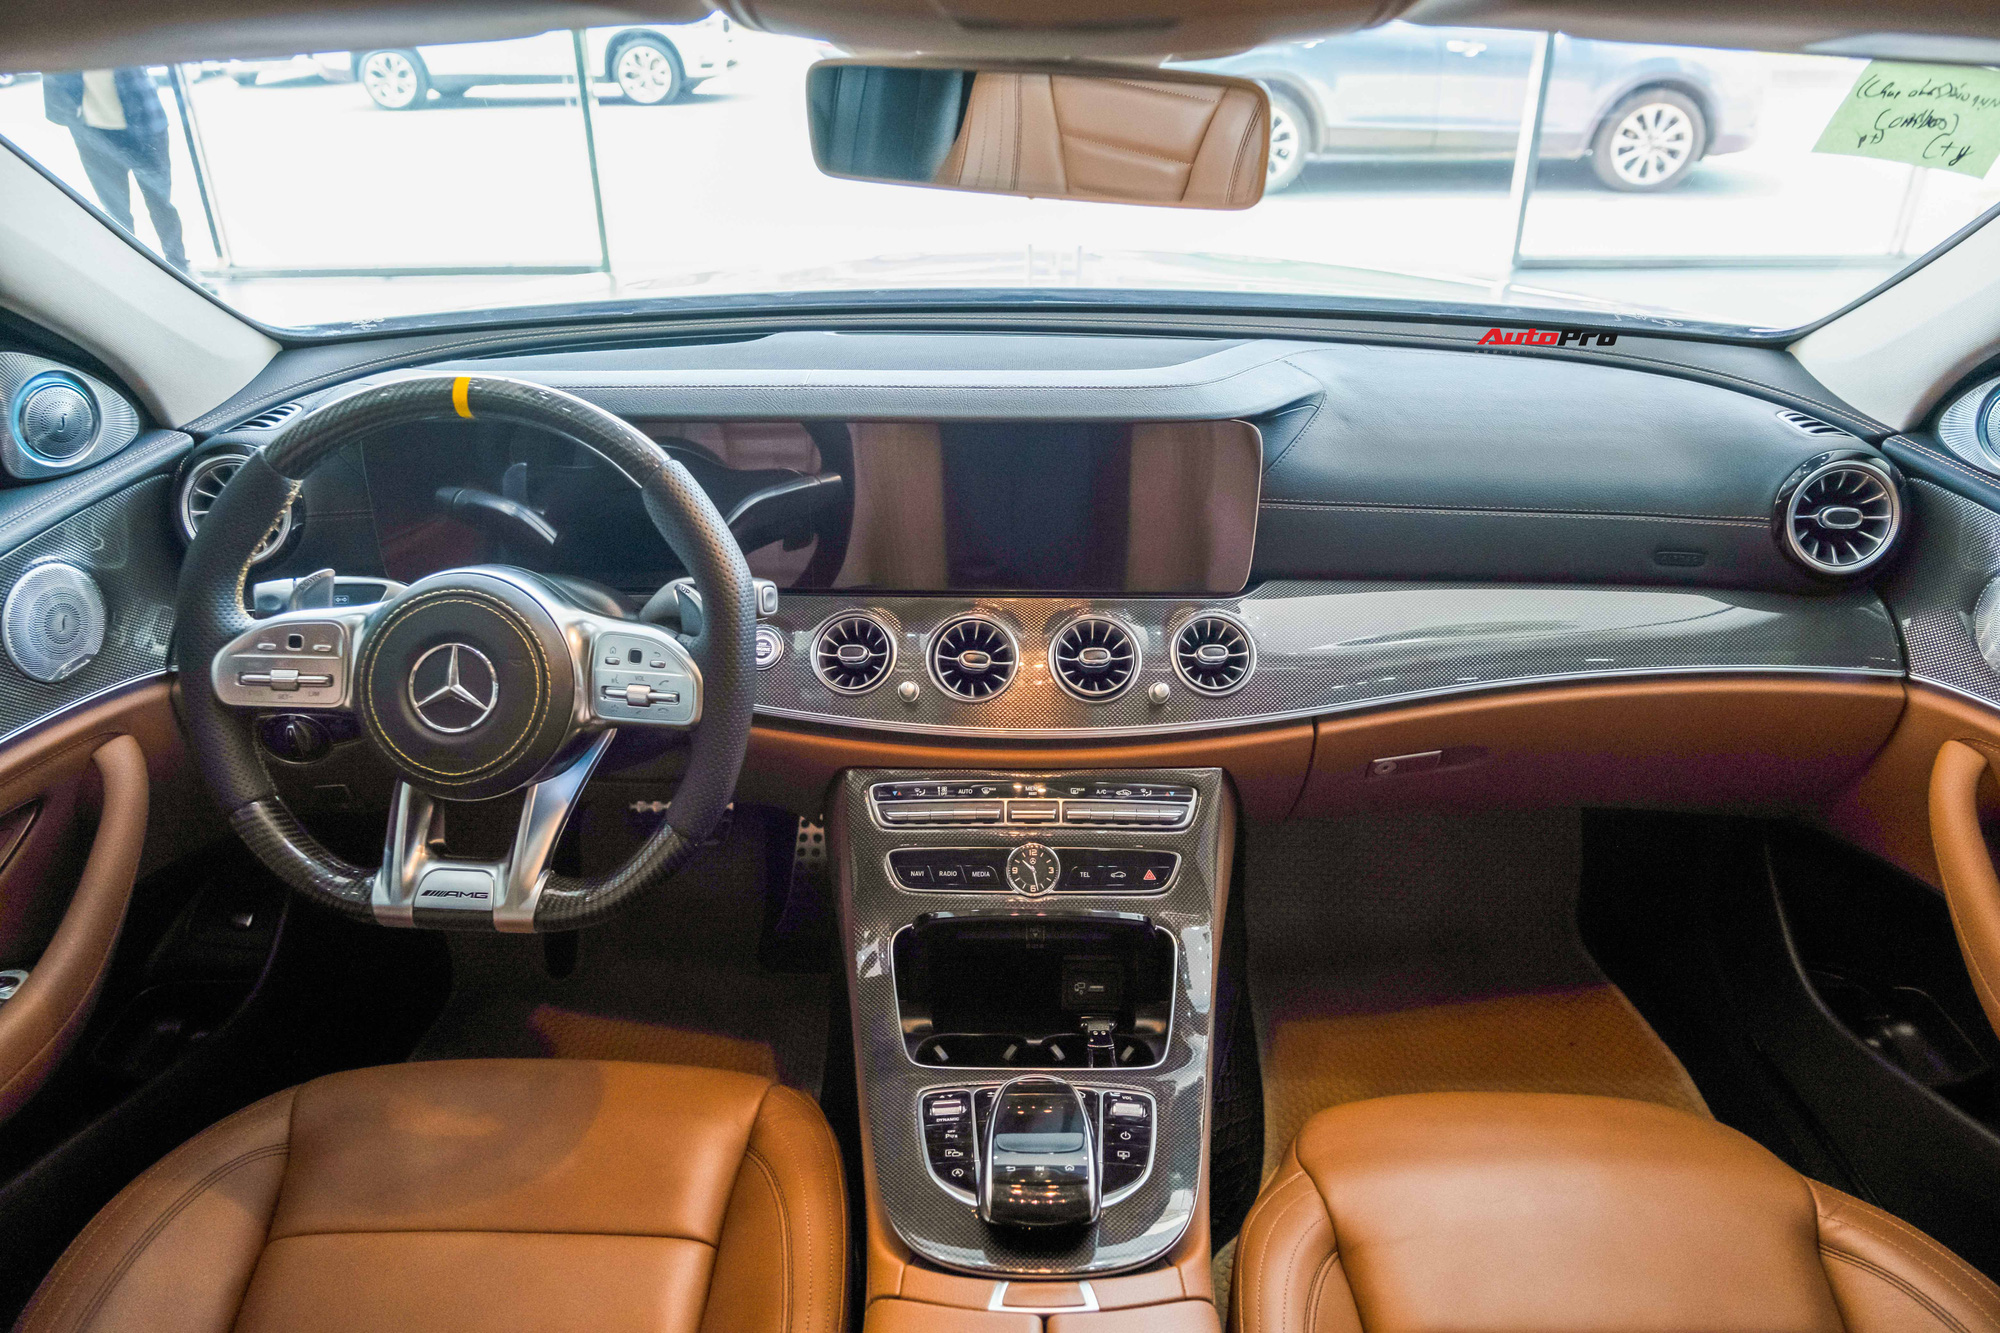 Chủ nhân Mercedes-Benz E 300 AMG rao bán xe giá 2,6 tỷ, tiết lộ vừa mất 200 triệu để lột xác nội/ngoại thất - Ảnh 4.